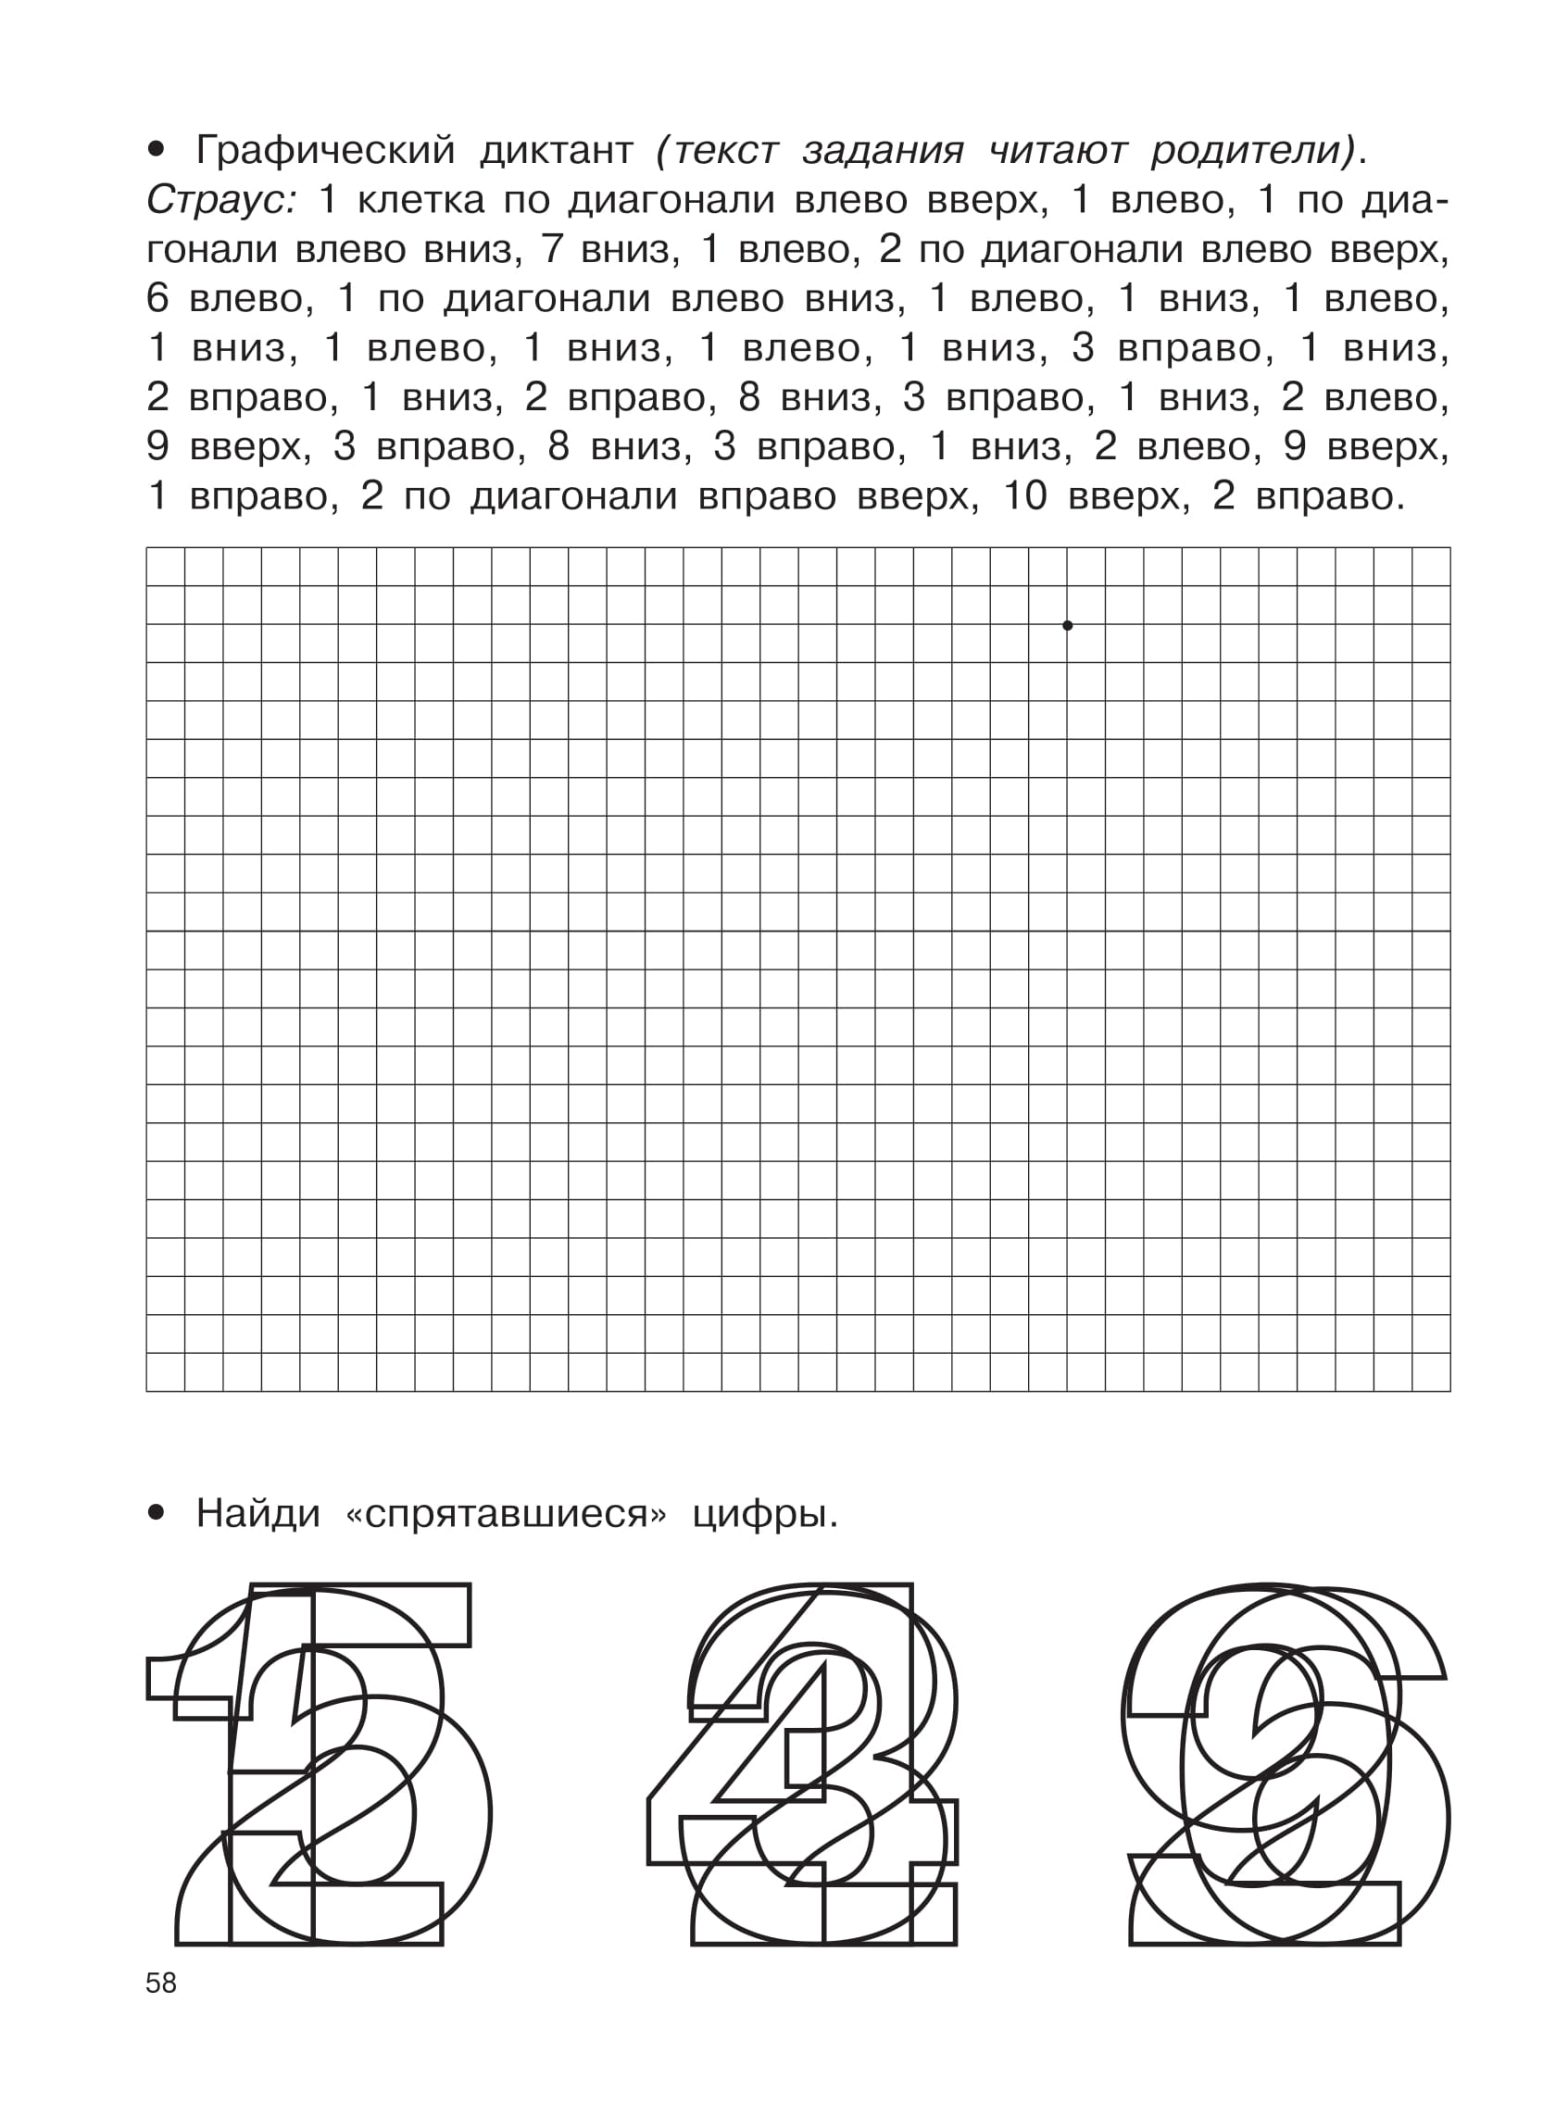 Раскраски и задания по математике для детей дошкольного и младшего школьного возраста (задания, память)